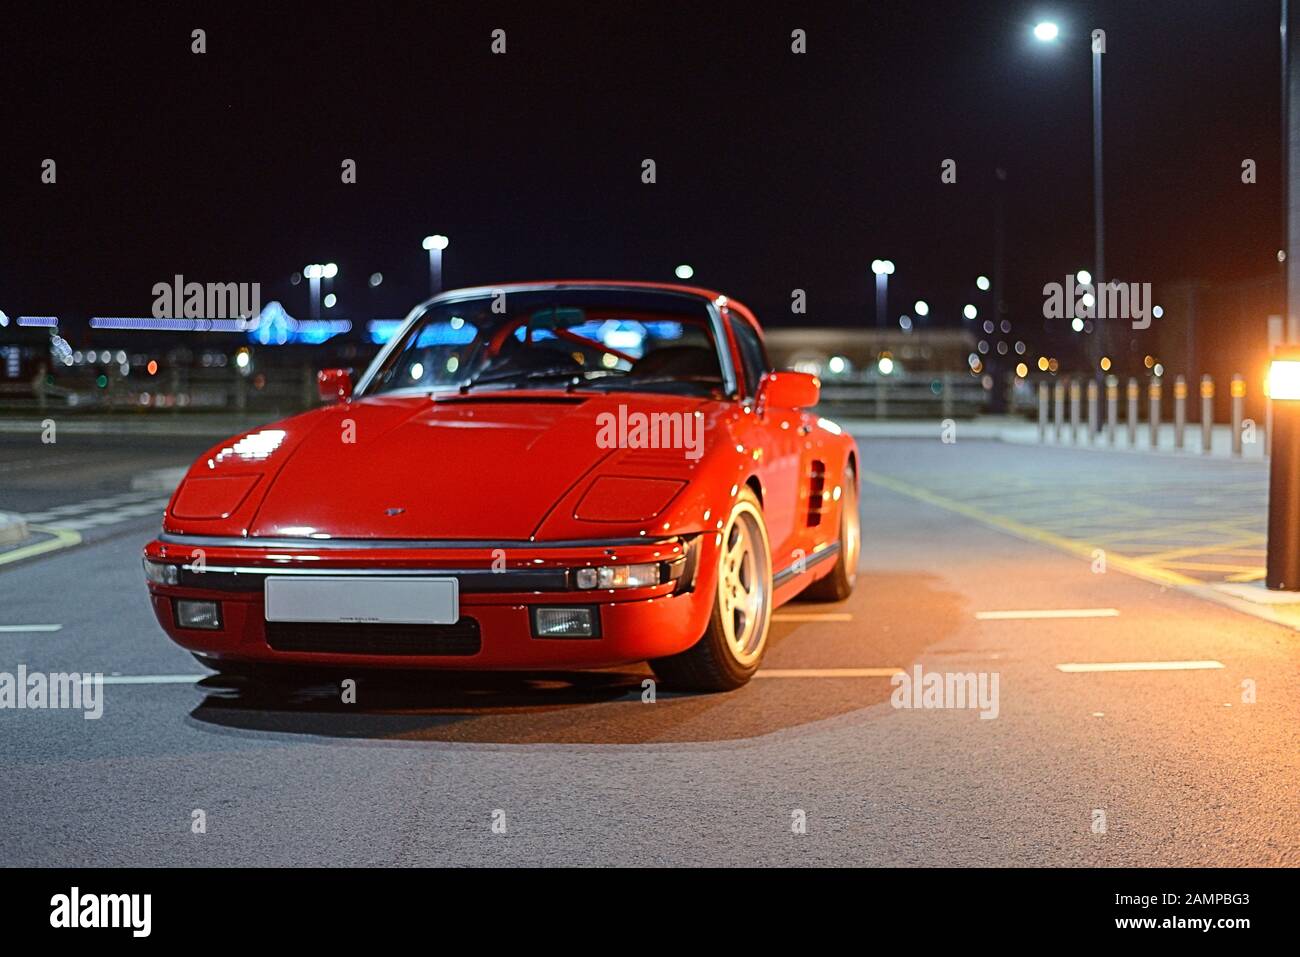 Porsche 911 Turbo à nez plat RUF garée sur un parking urbain la nuit Banque D'Images